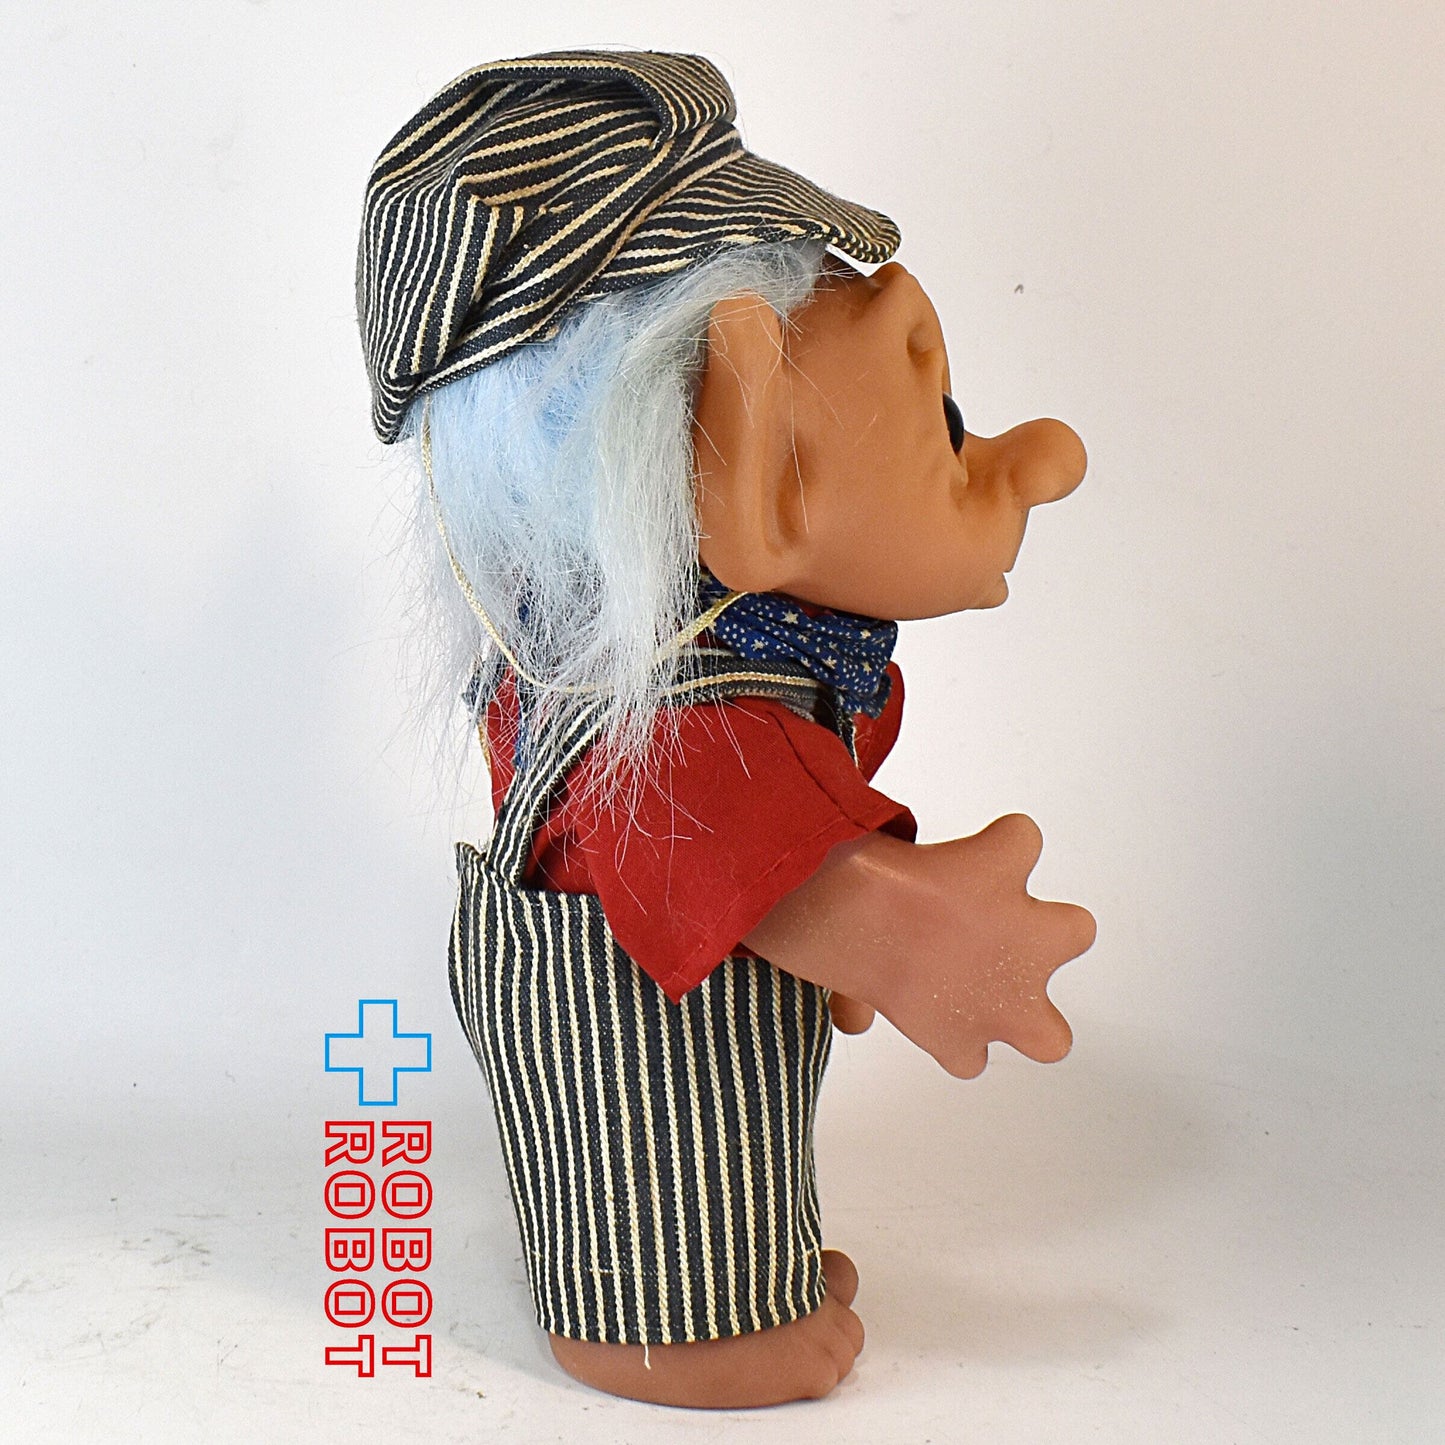 トロール 縦縞 ストライプ オーバーオールの男 青髪 22センチ トロル人形